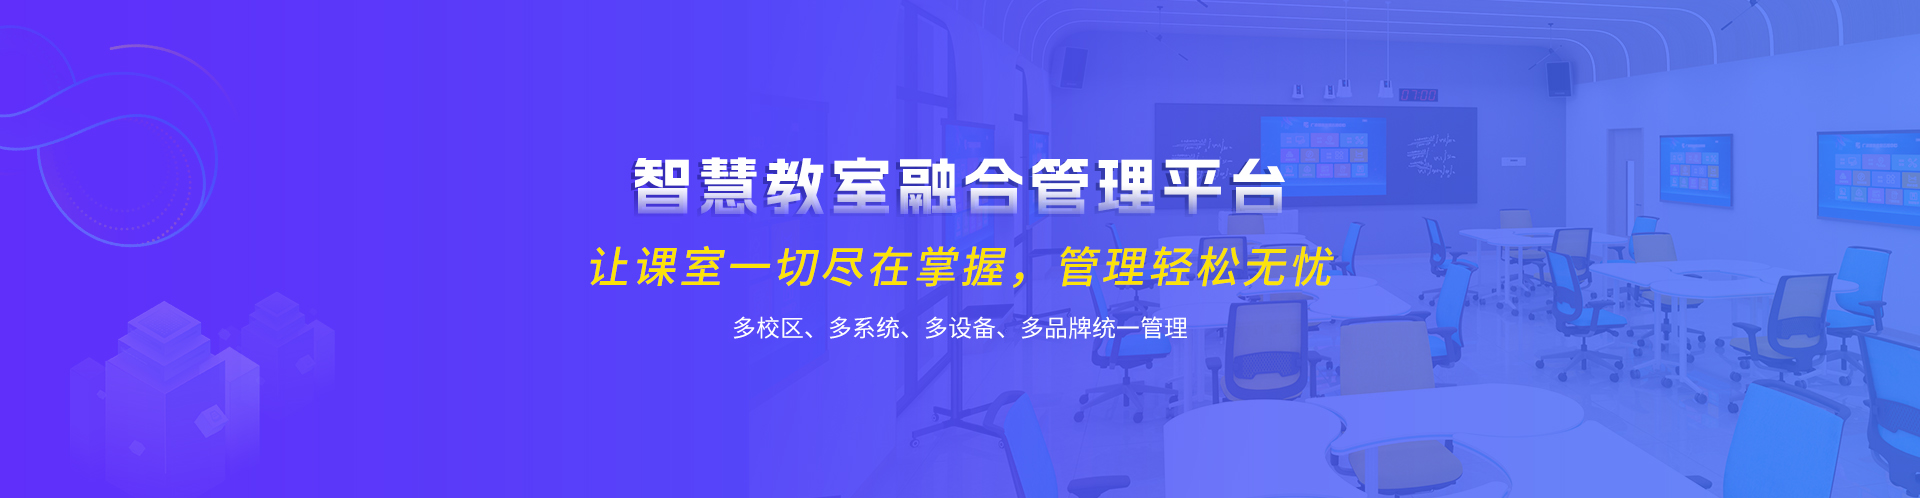 关于当前产品emc易倍体育登录·(中国)官方网站的成功案例等相关图片